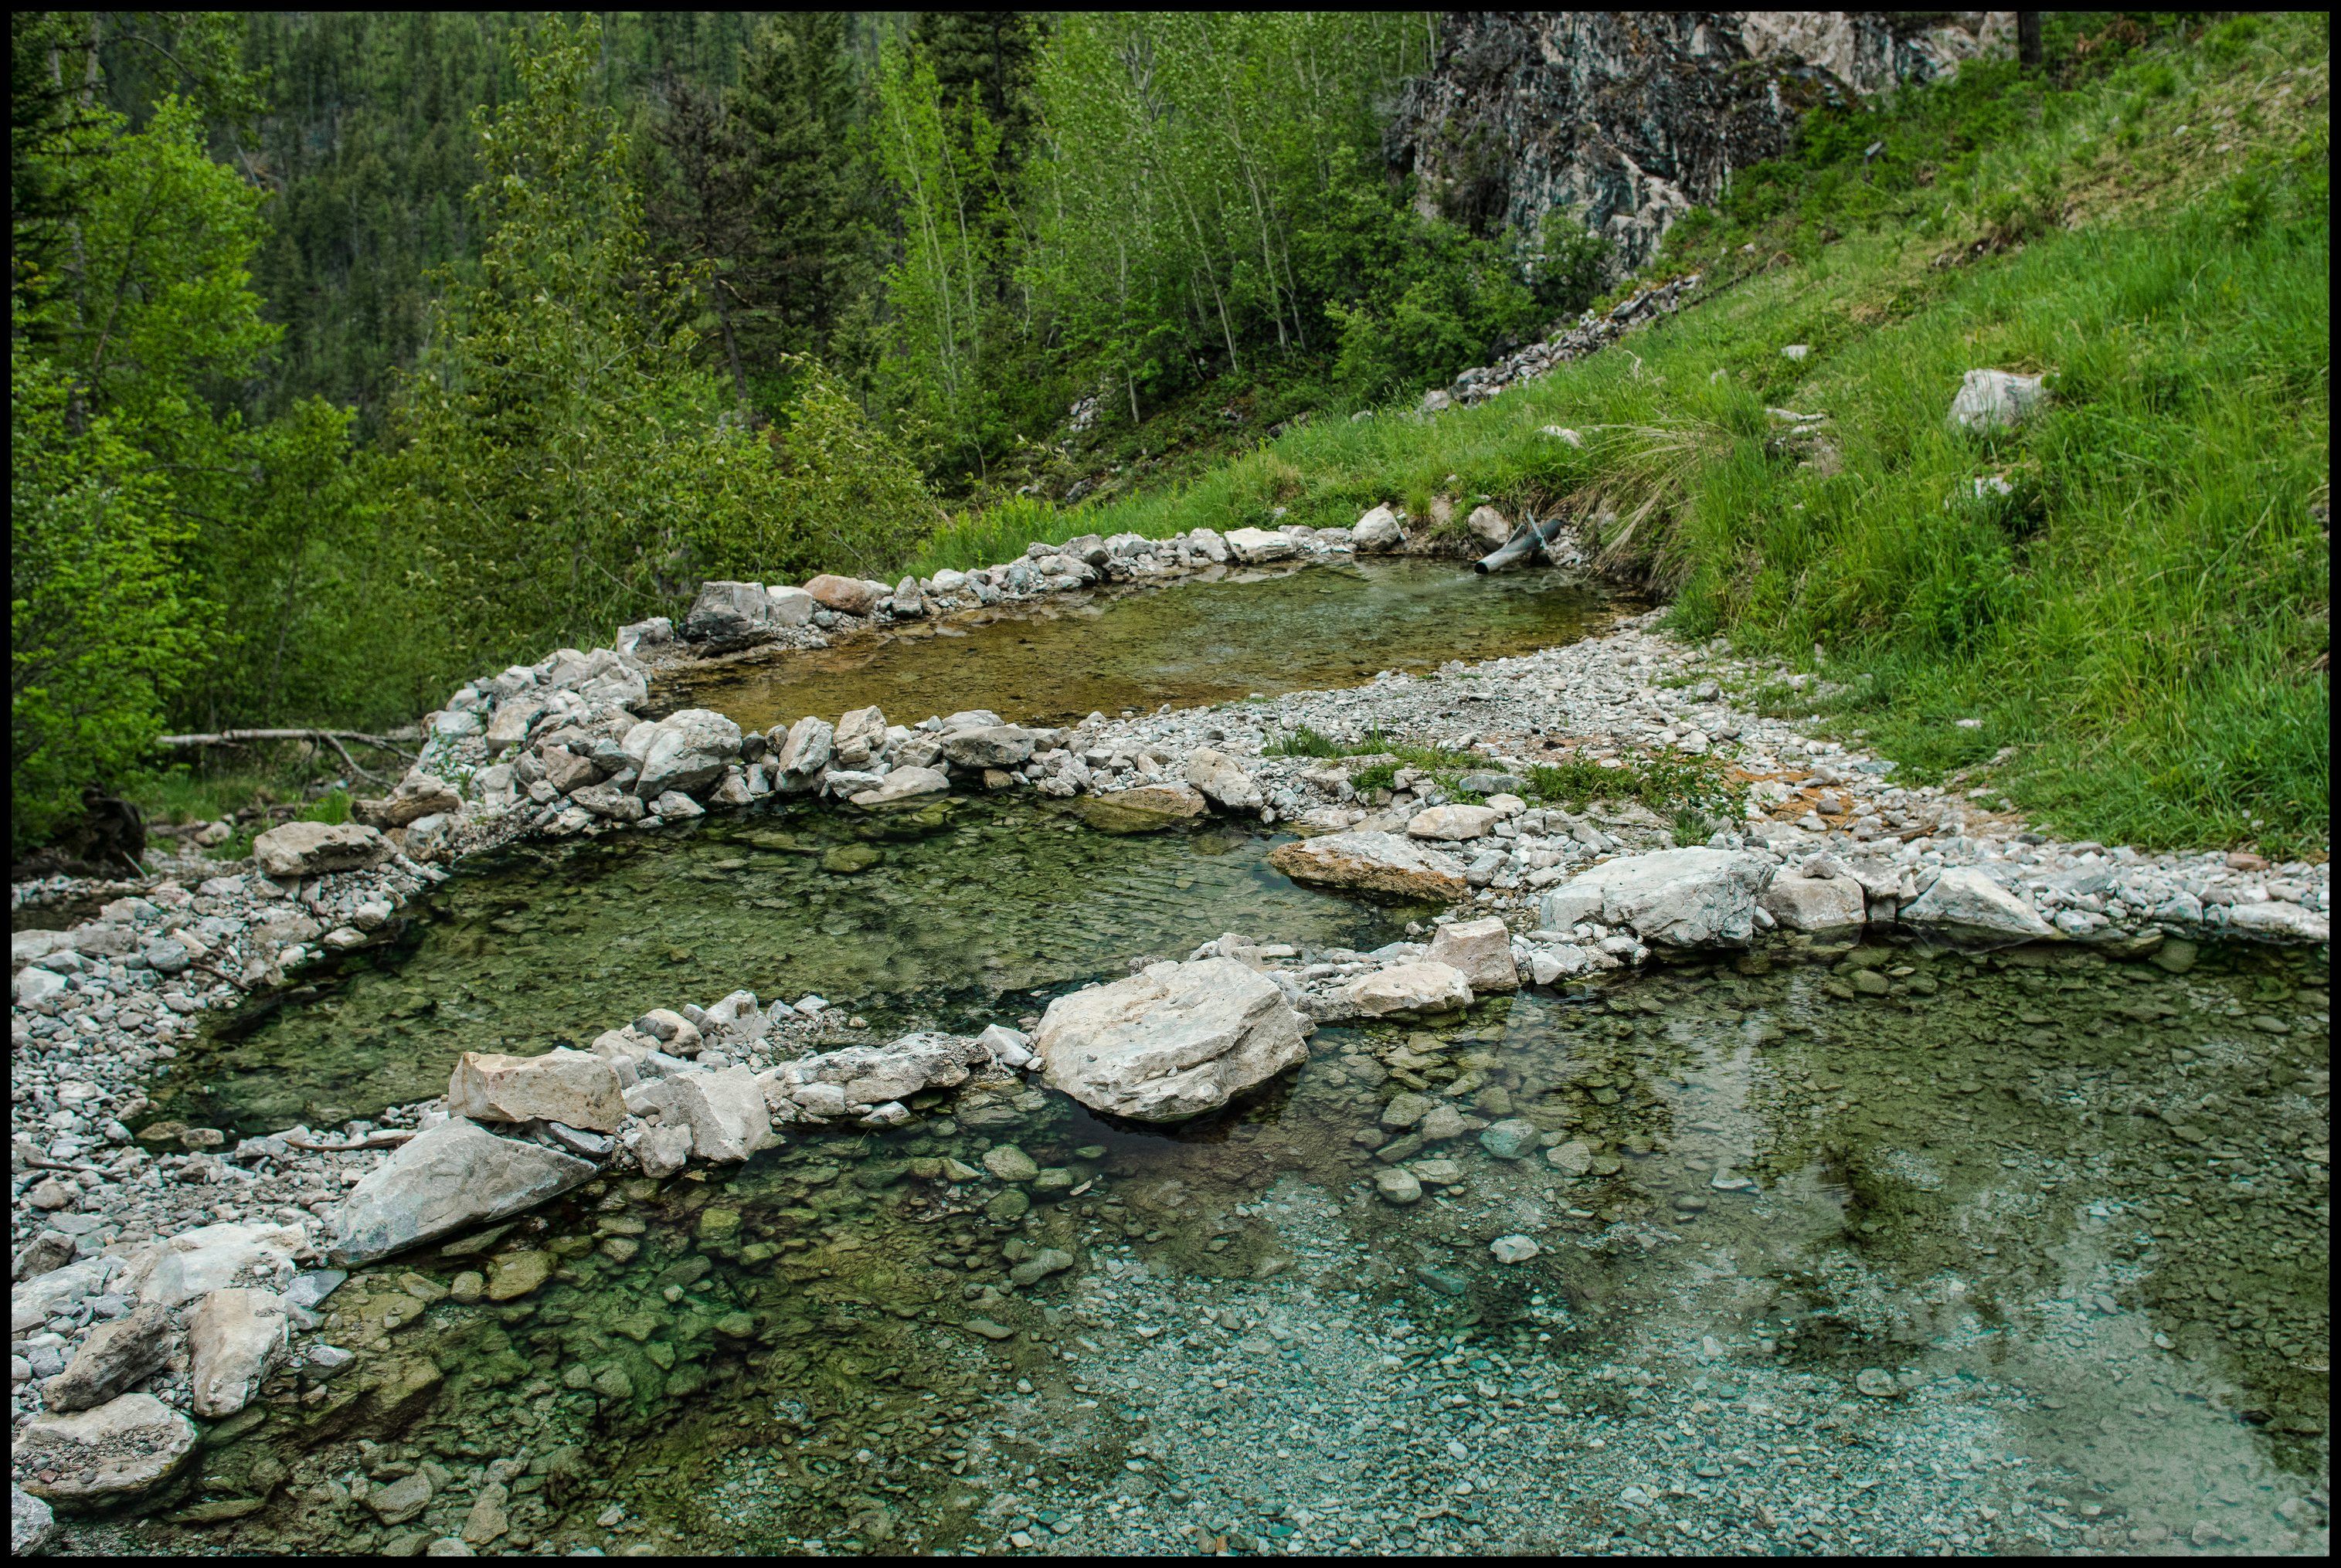 Ram Creek warm Springs pools